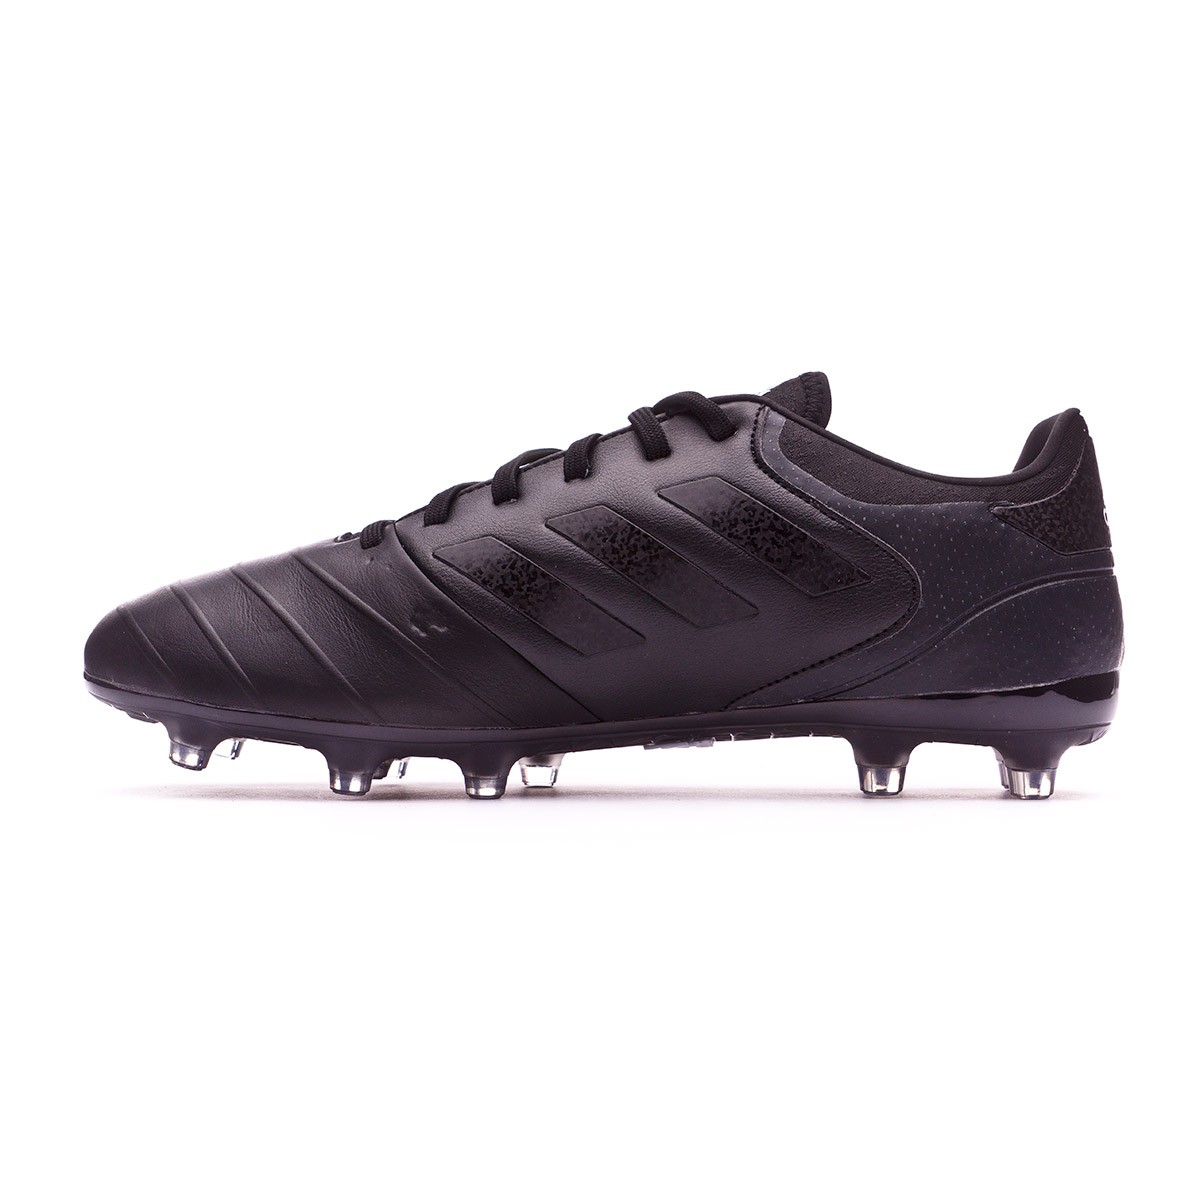 Zapatos de fútbol adidas Copa 18.2 FG Core black-White - Tienda de fútbol  Fútbol Emotion